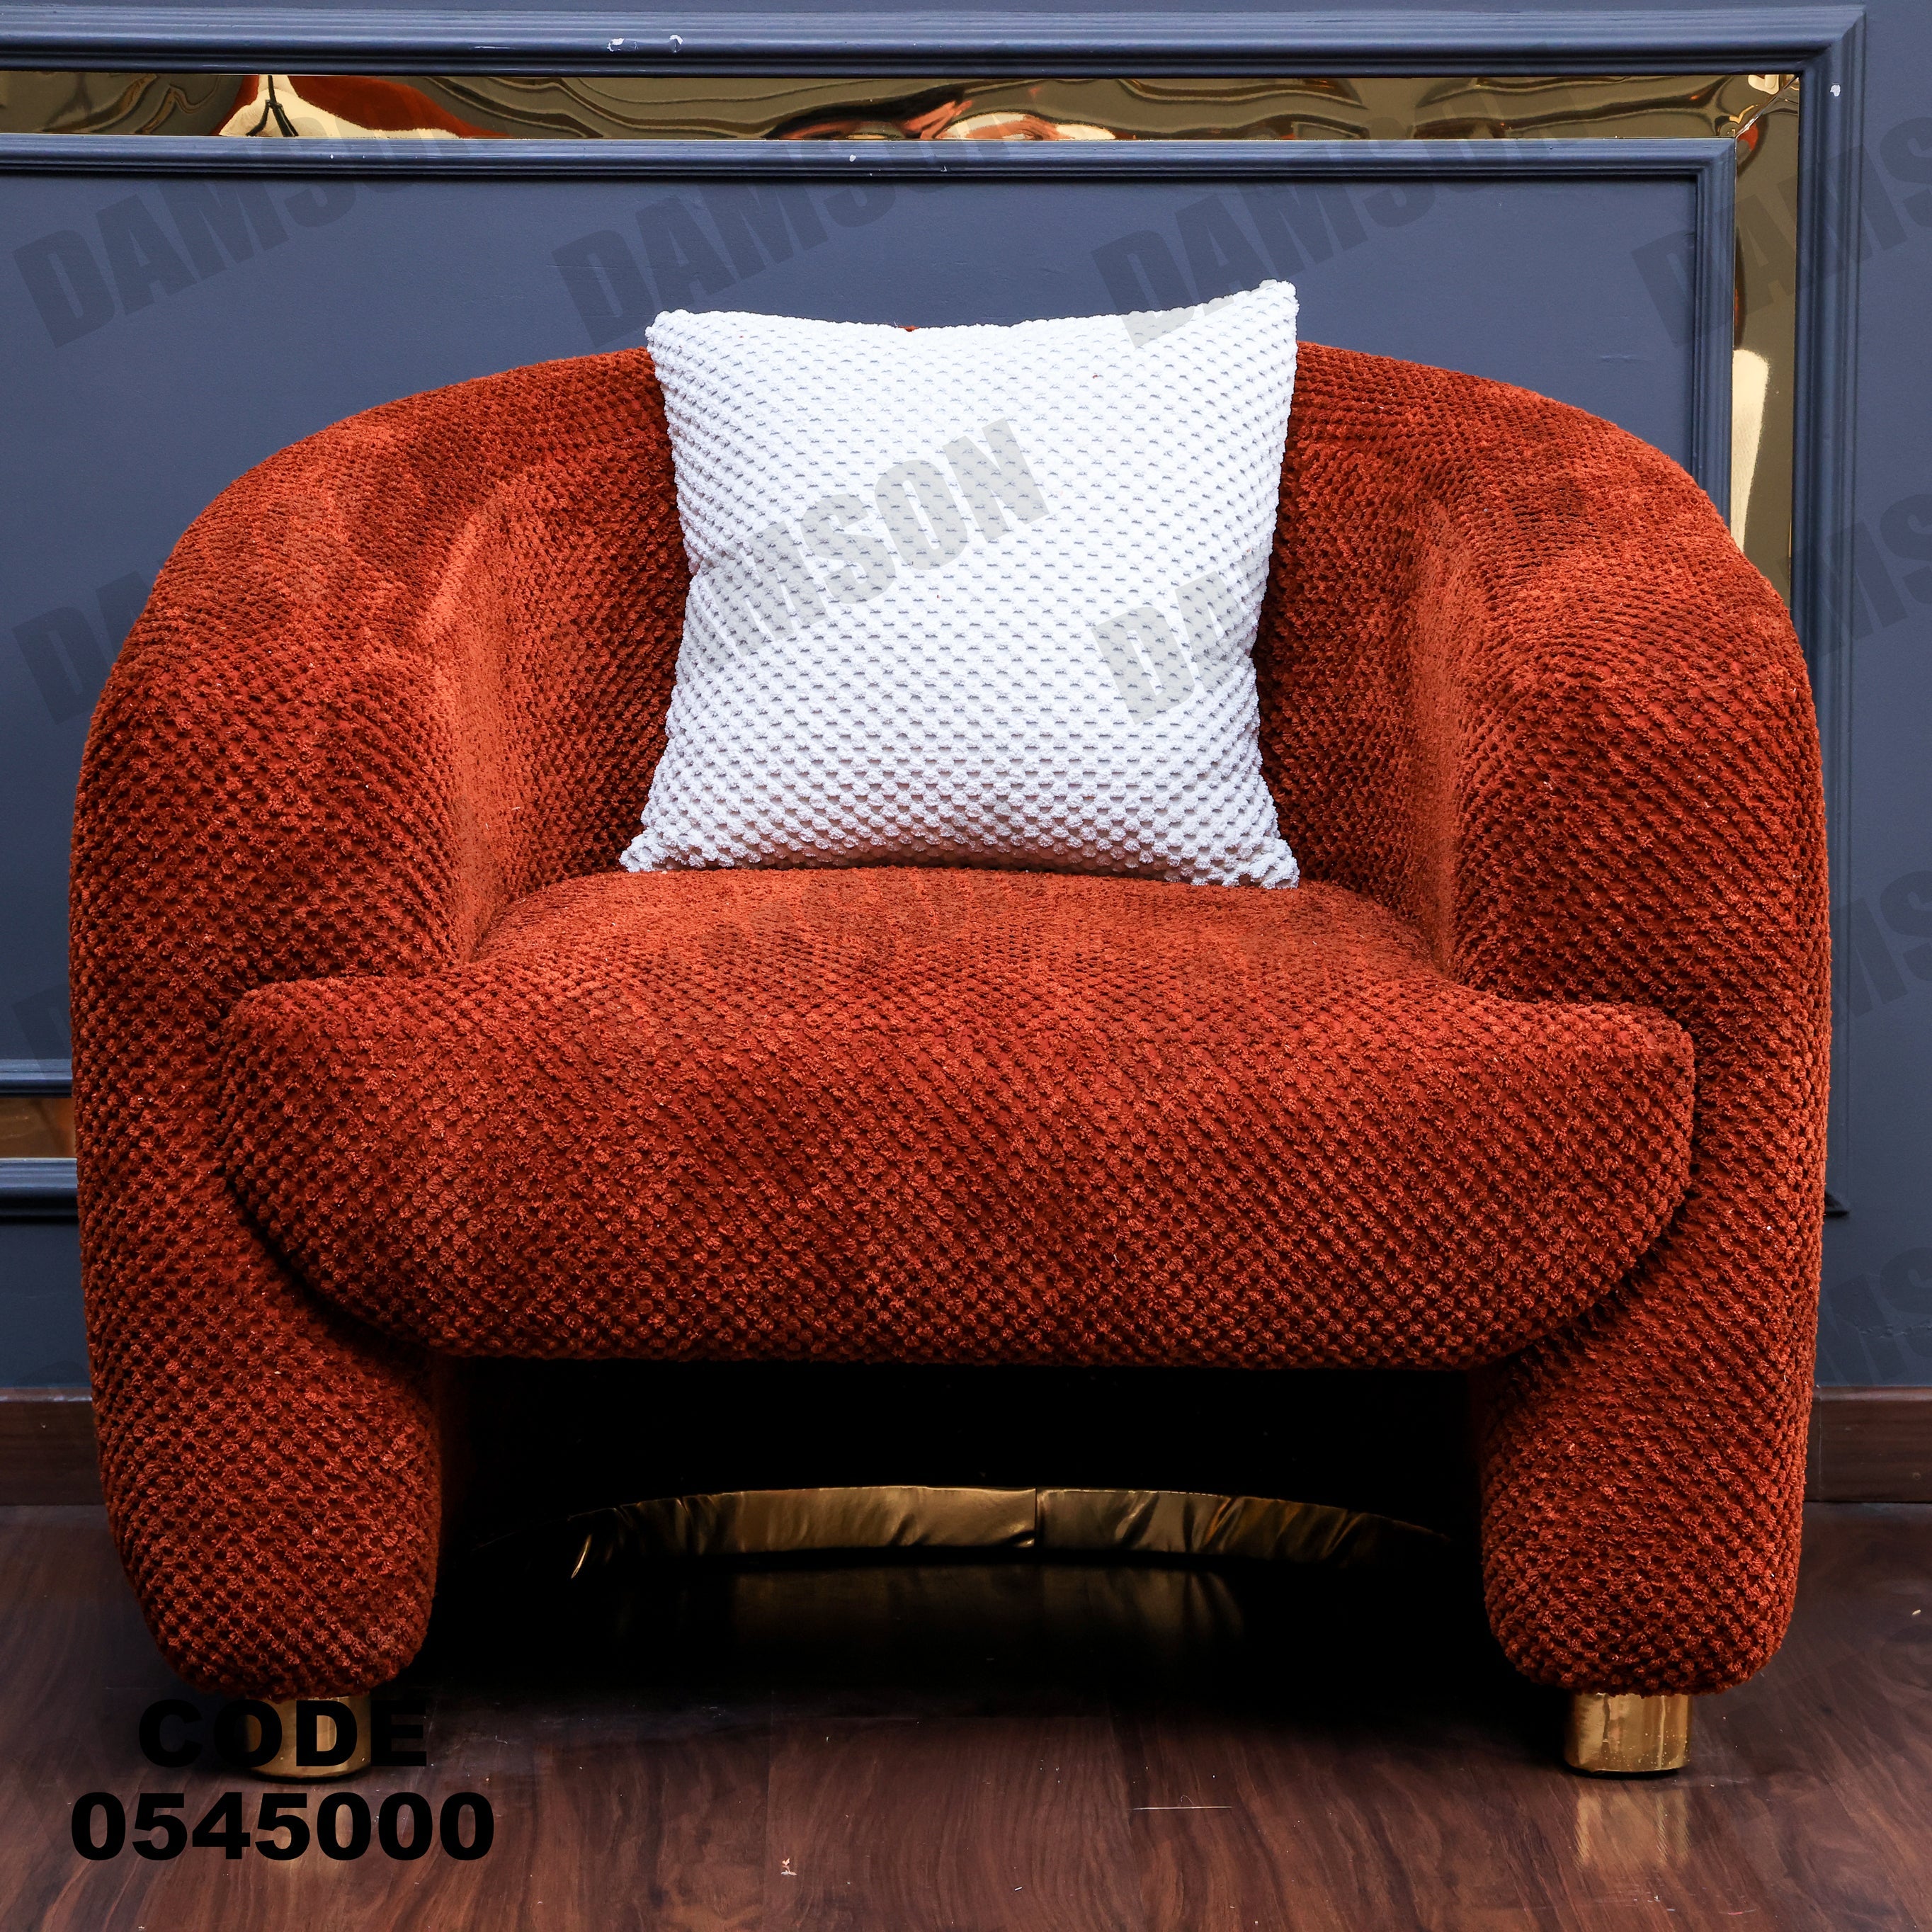 فوتية 1-450 - Damson Furnitureفوتية 1-450